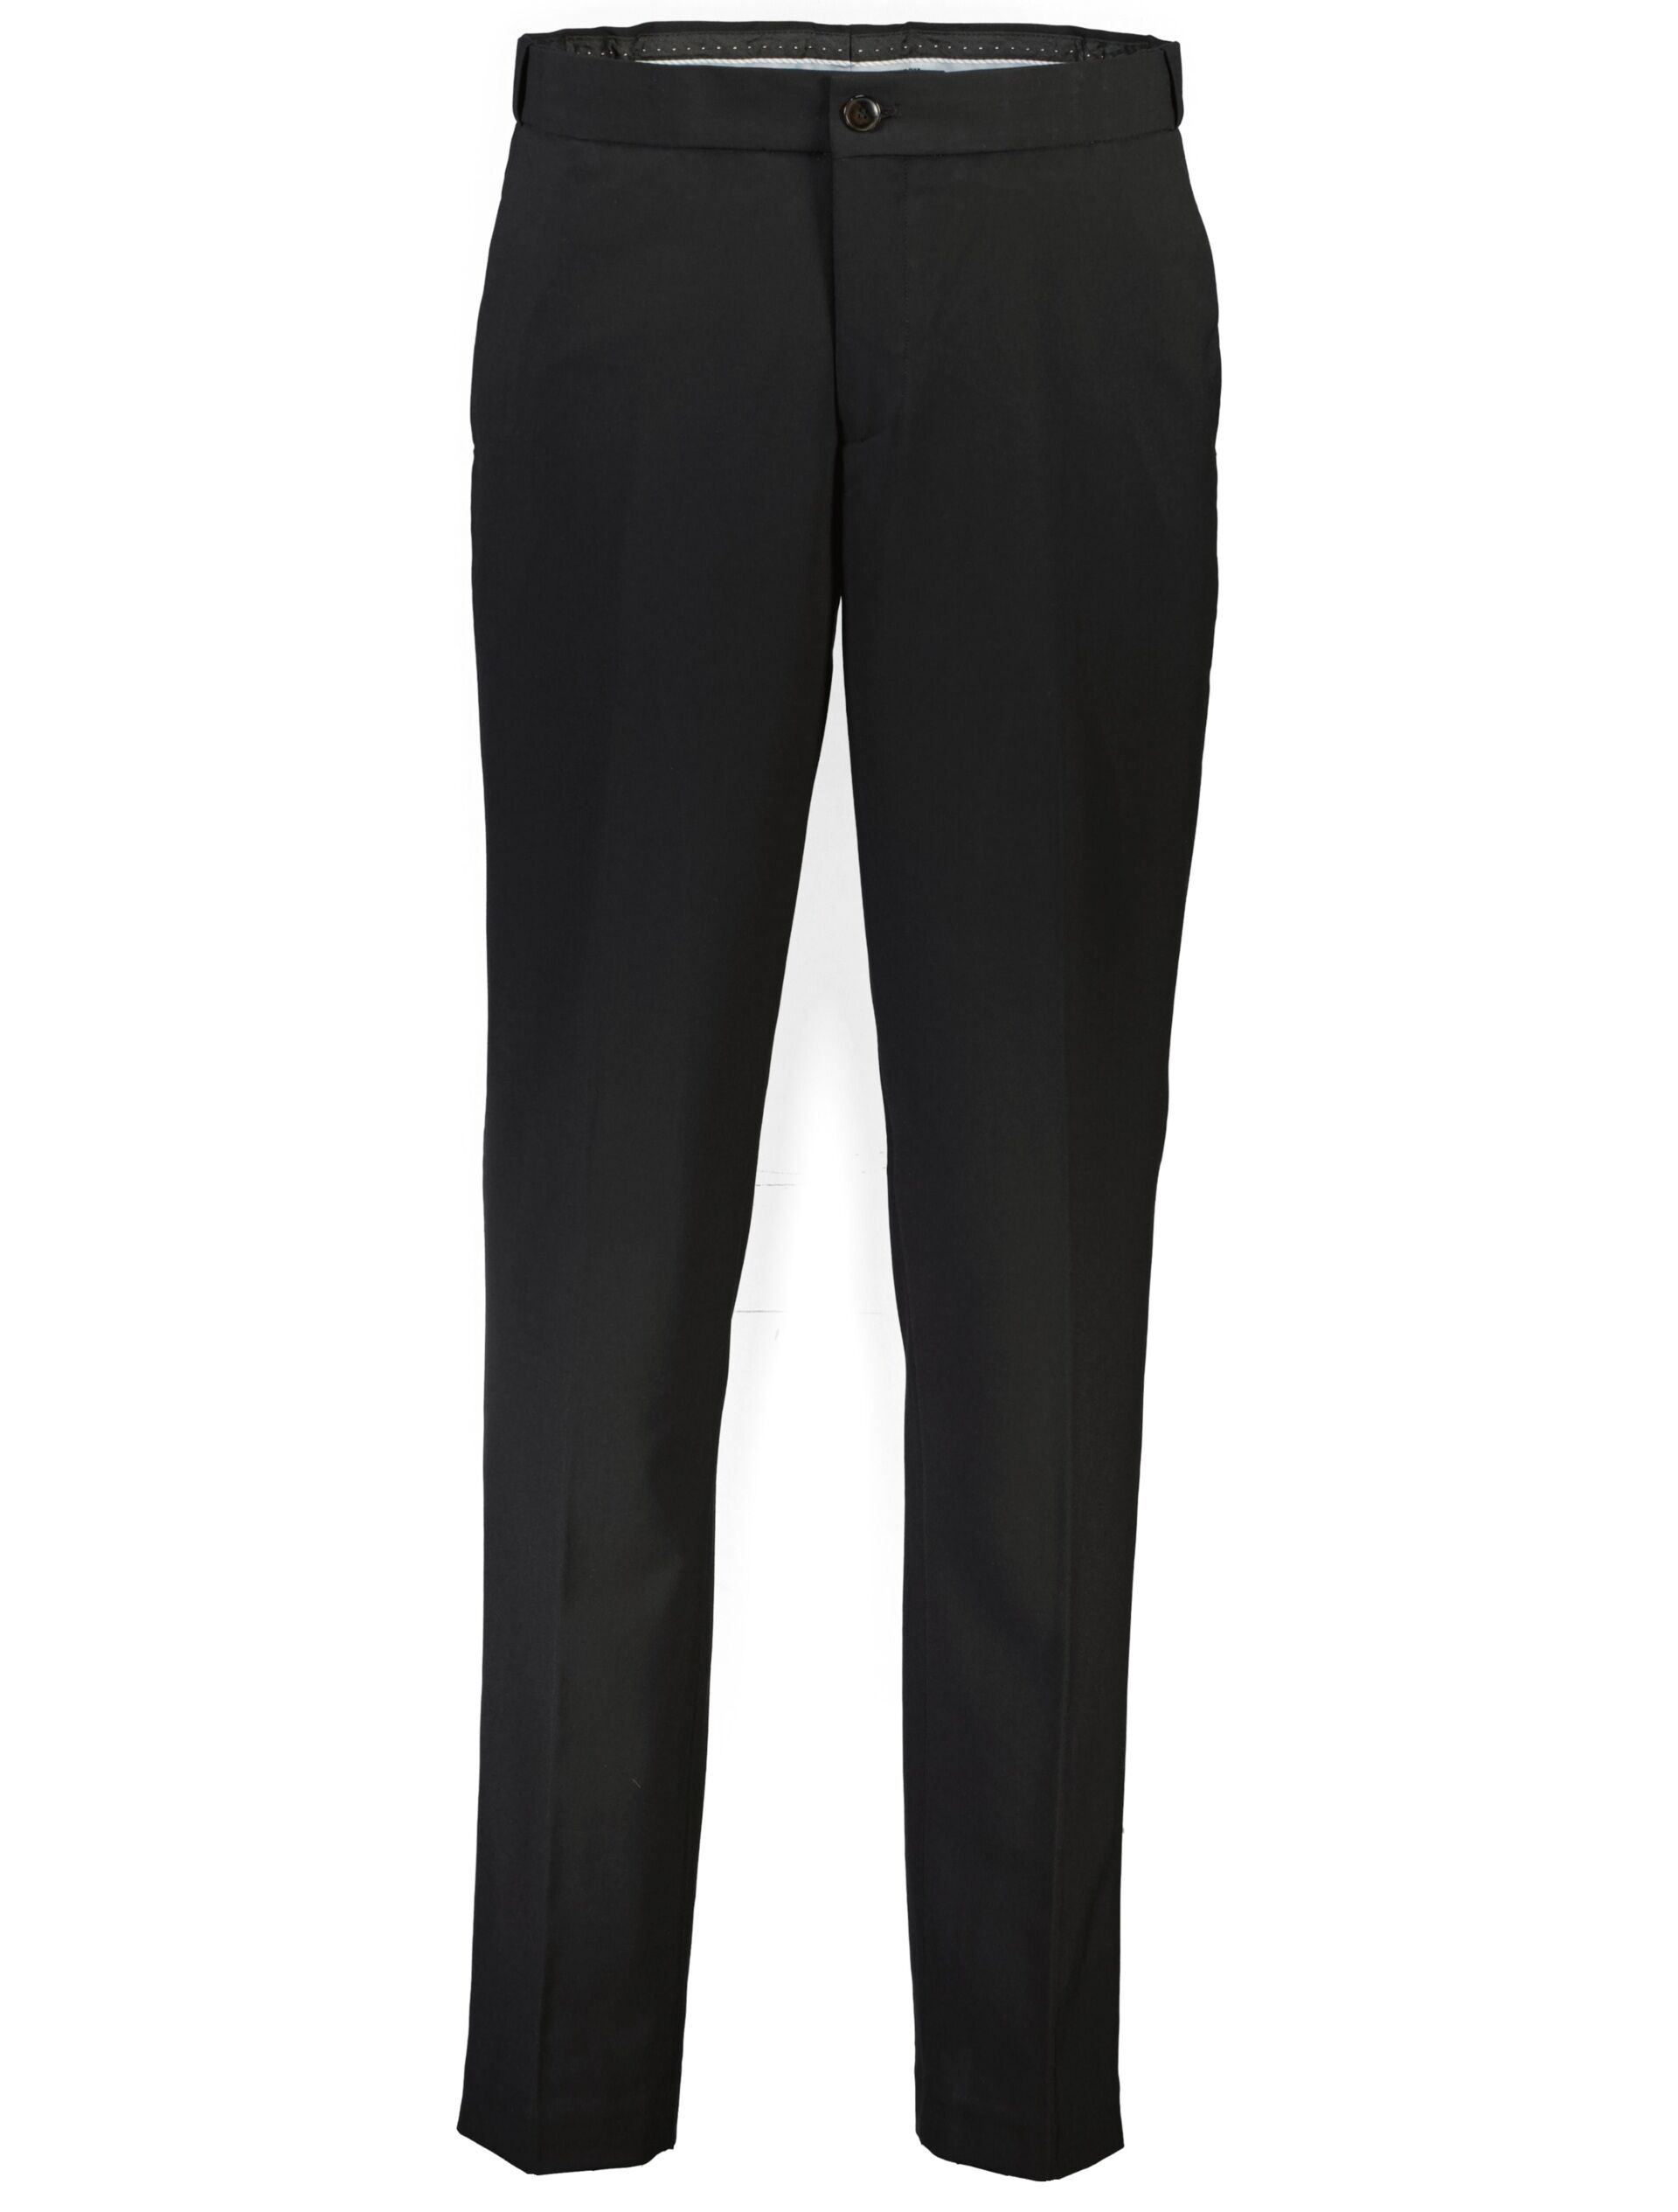 Suit pants Suit pants Black 30-046025-X